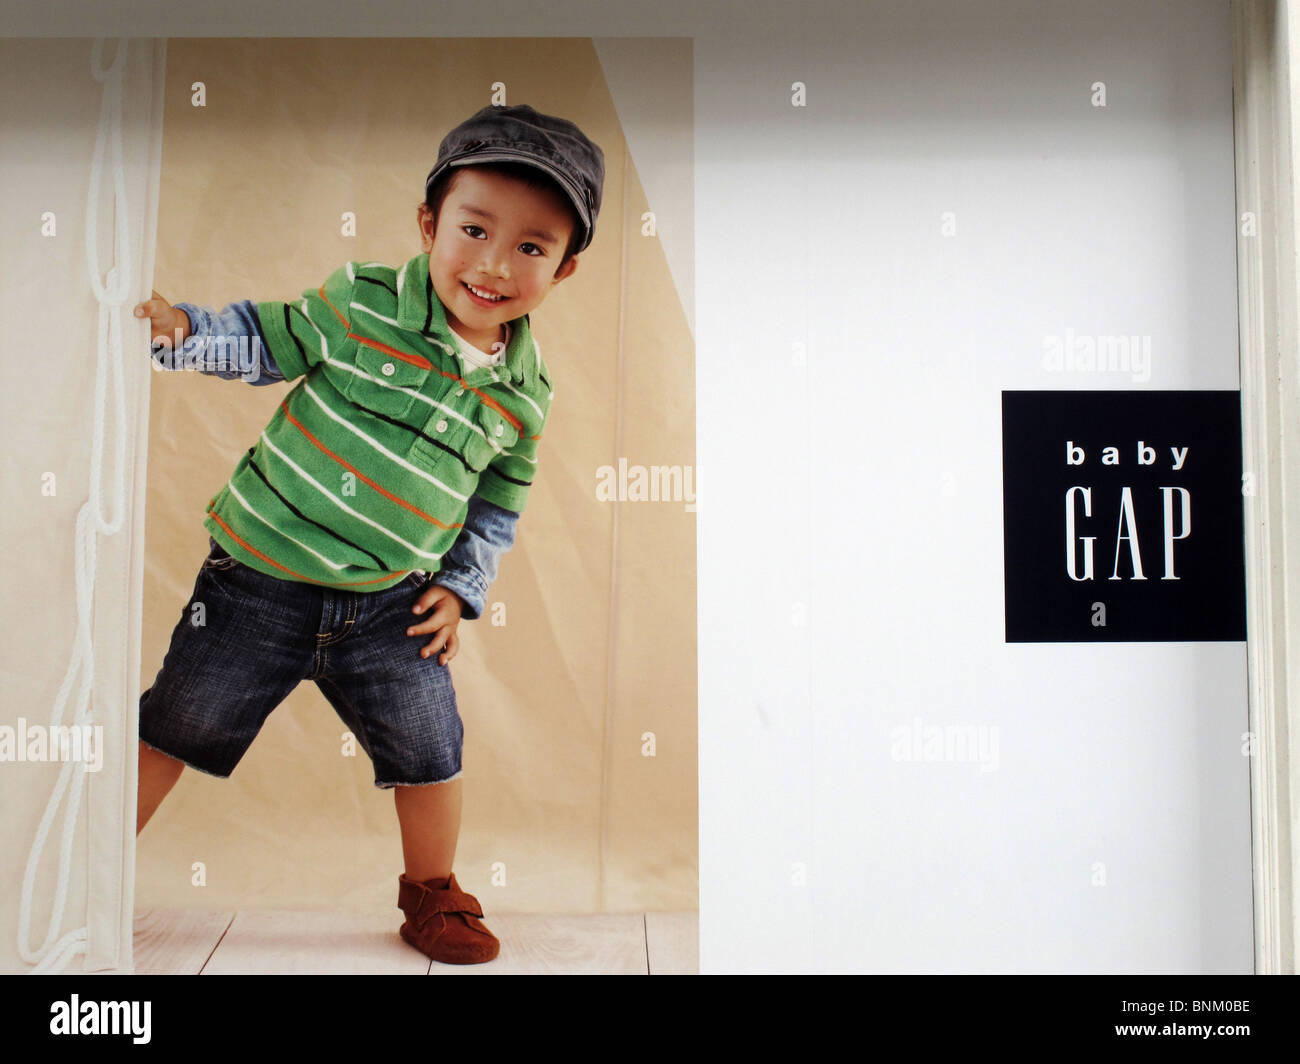 Annonce Gap bébé enfant mignon vêtements logo de l'affiche Banque D'Images